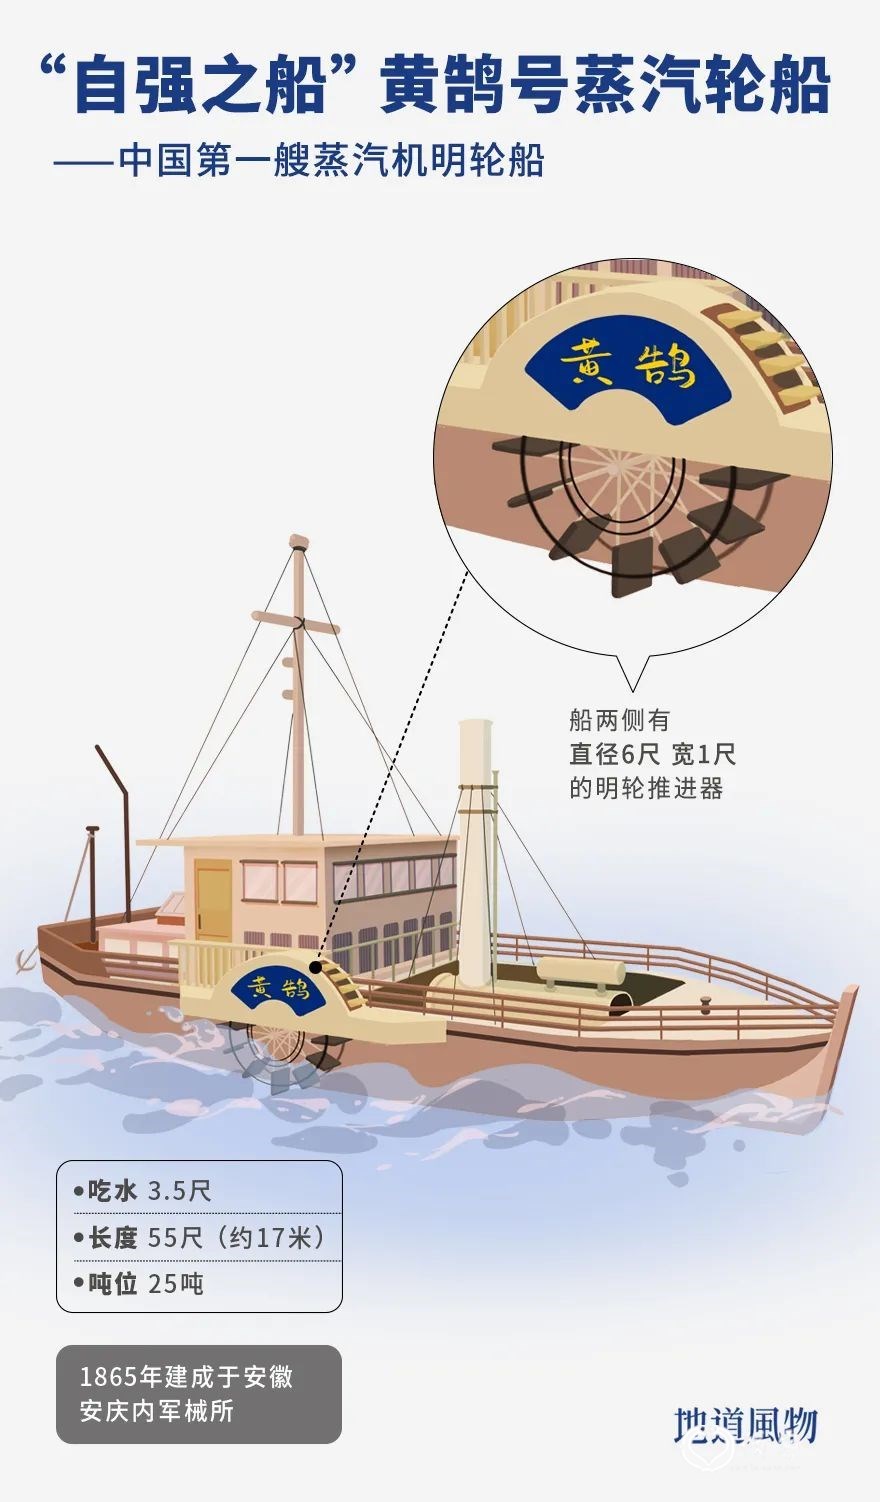 ▲ 黄鹄号蒸汽轮船 。插画/miya8182，设计/刘航